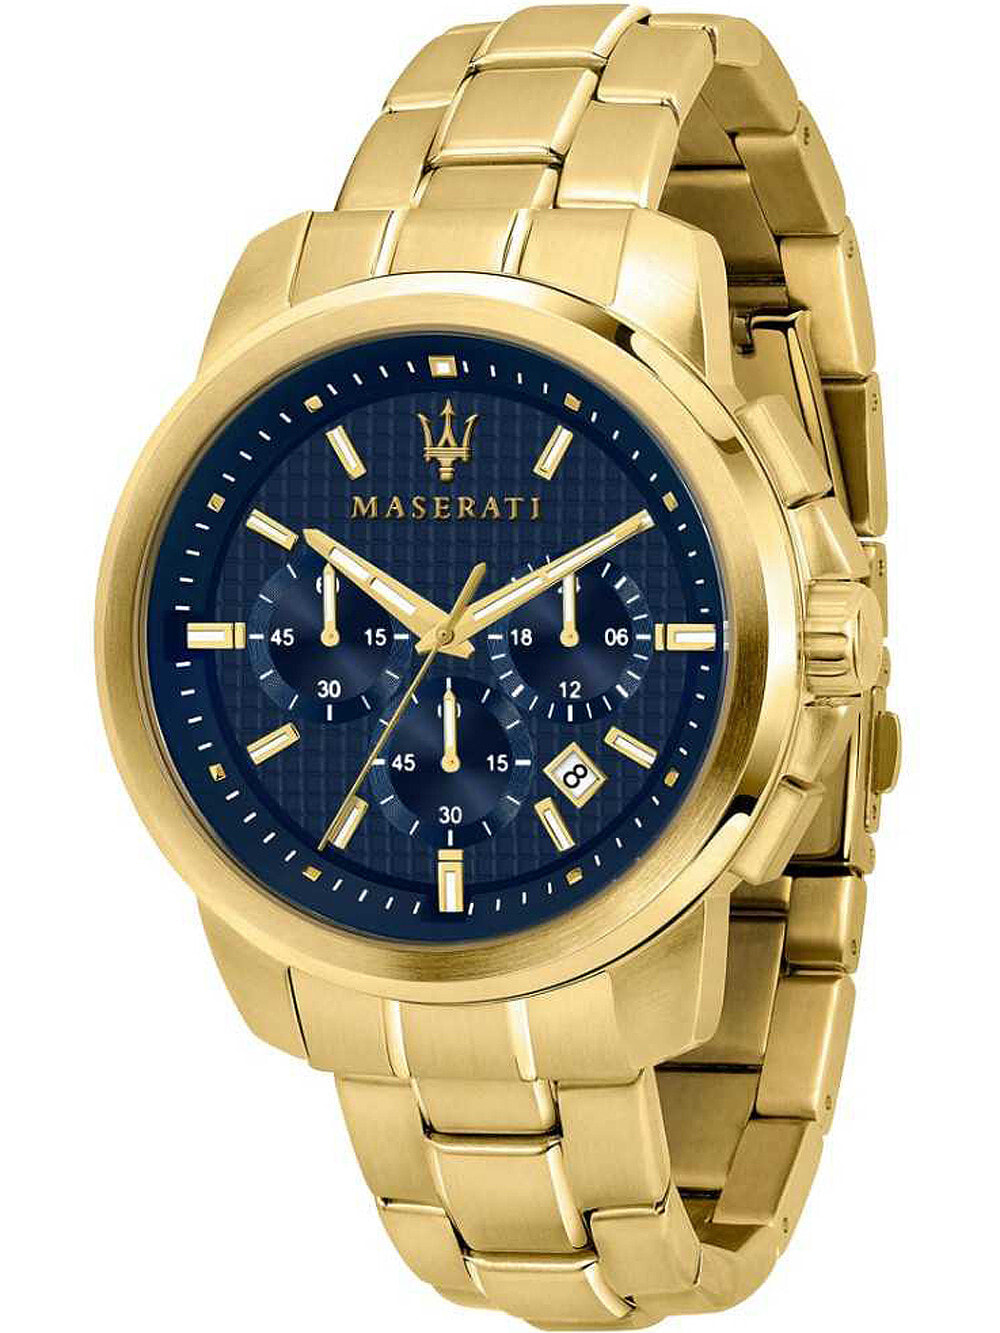 Мужские наручные часы с золотистым браслетом Maserati R8873621021 Successo chrono 44mm 5ATM